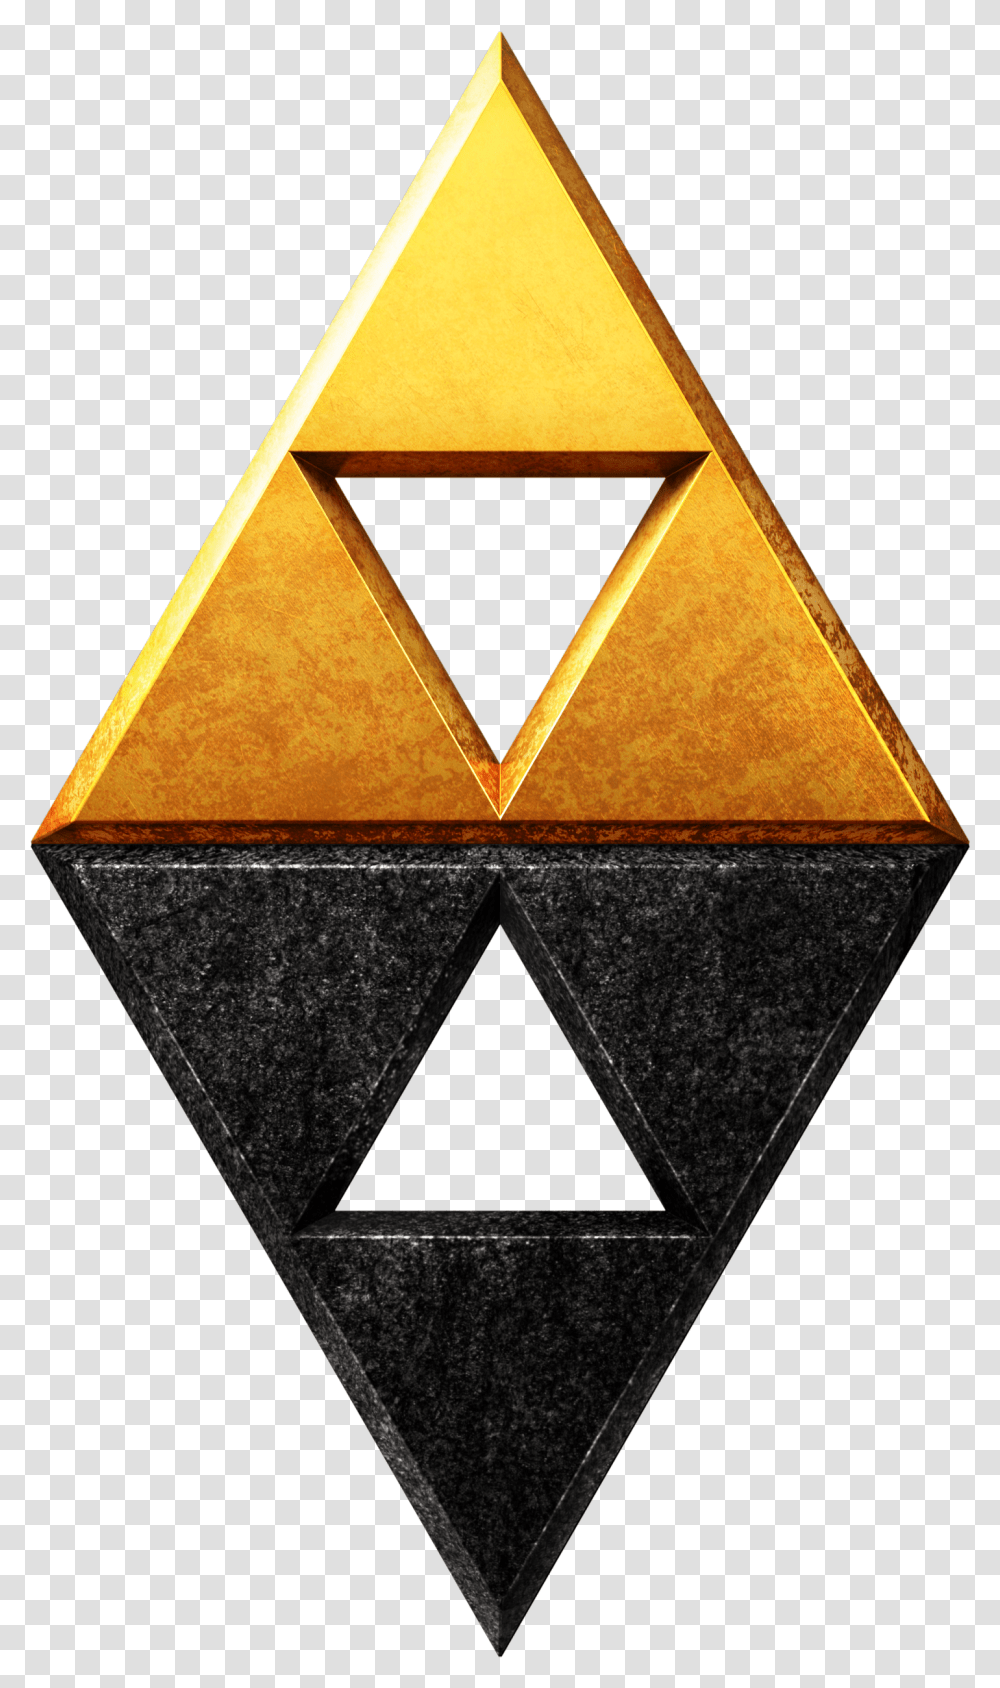 Legend Of Zelda Link Between Legend Of Zelda Triforce, Triangle, Rug, Lamp, Trophy Transparent Png